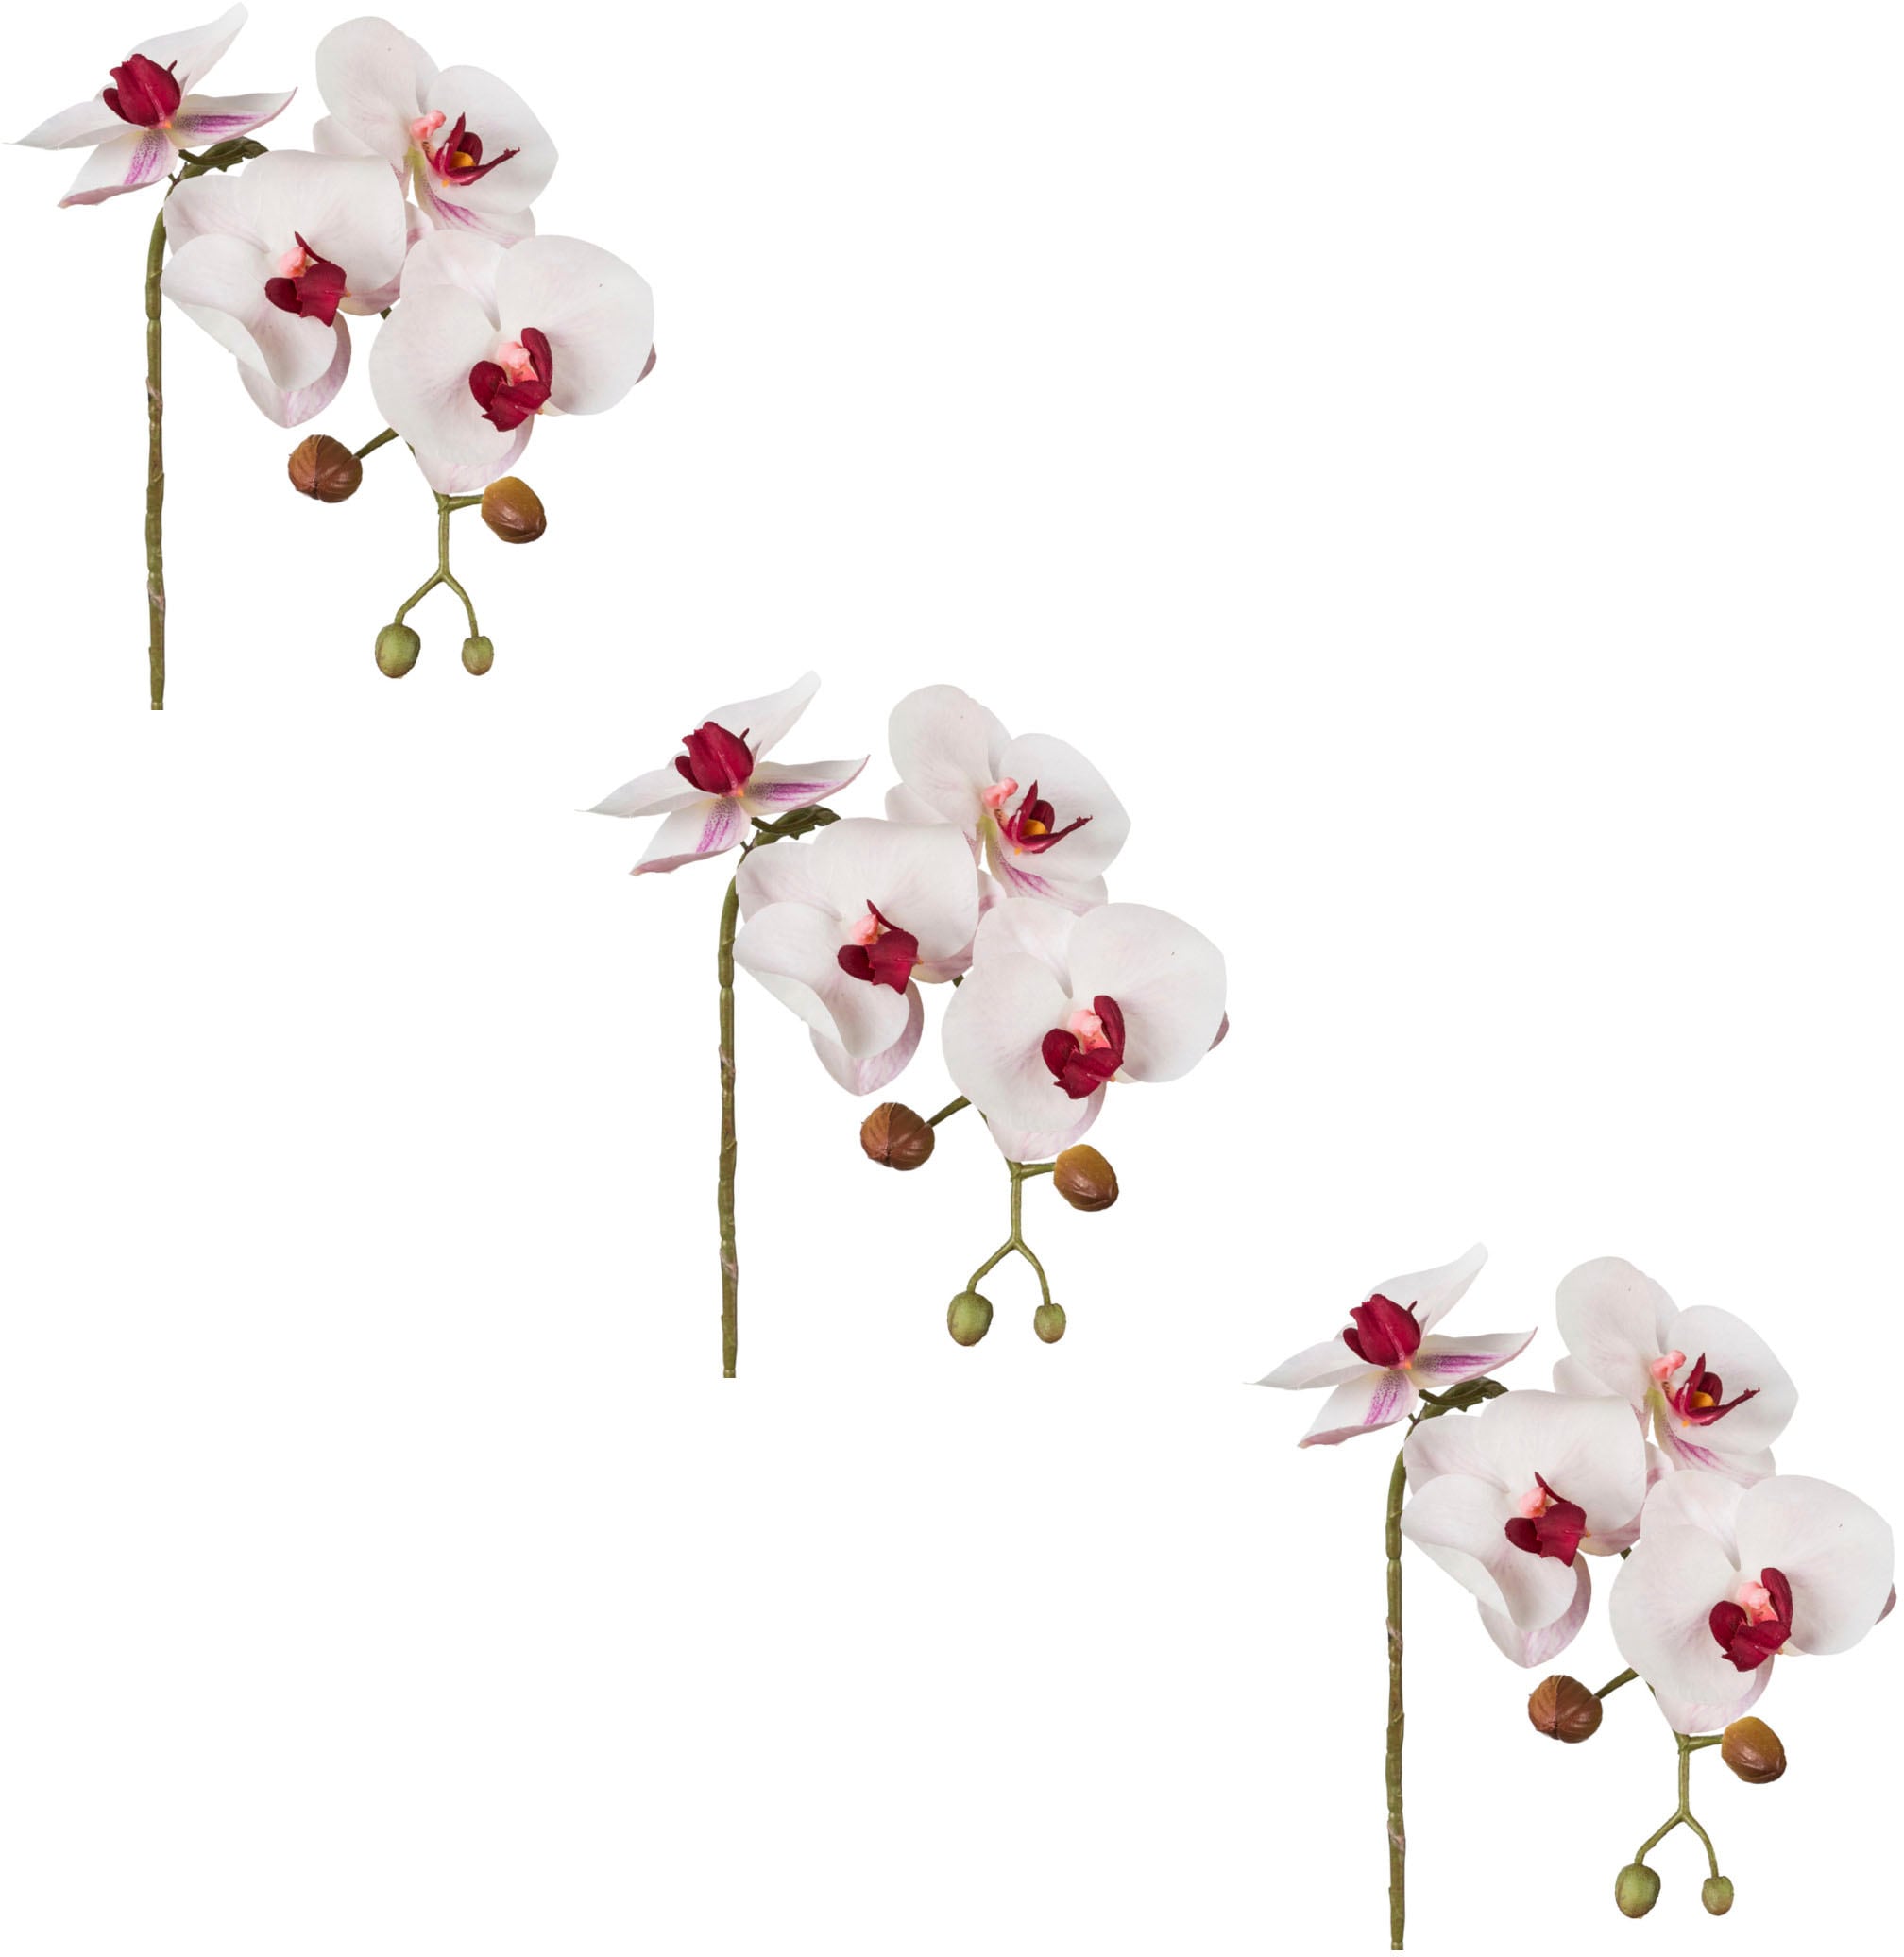 auf Kunstblume »Phalaenopsis 3D-print«, green Creativ Real-Touch-Blüten mit Raten kaufen